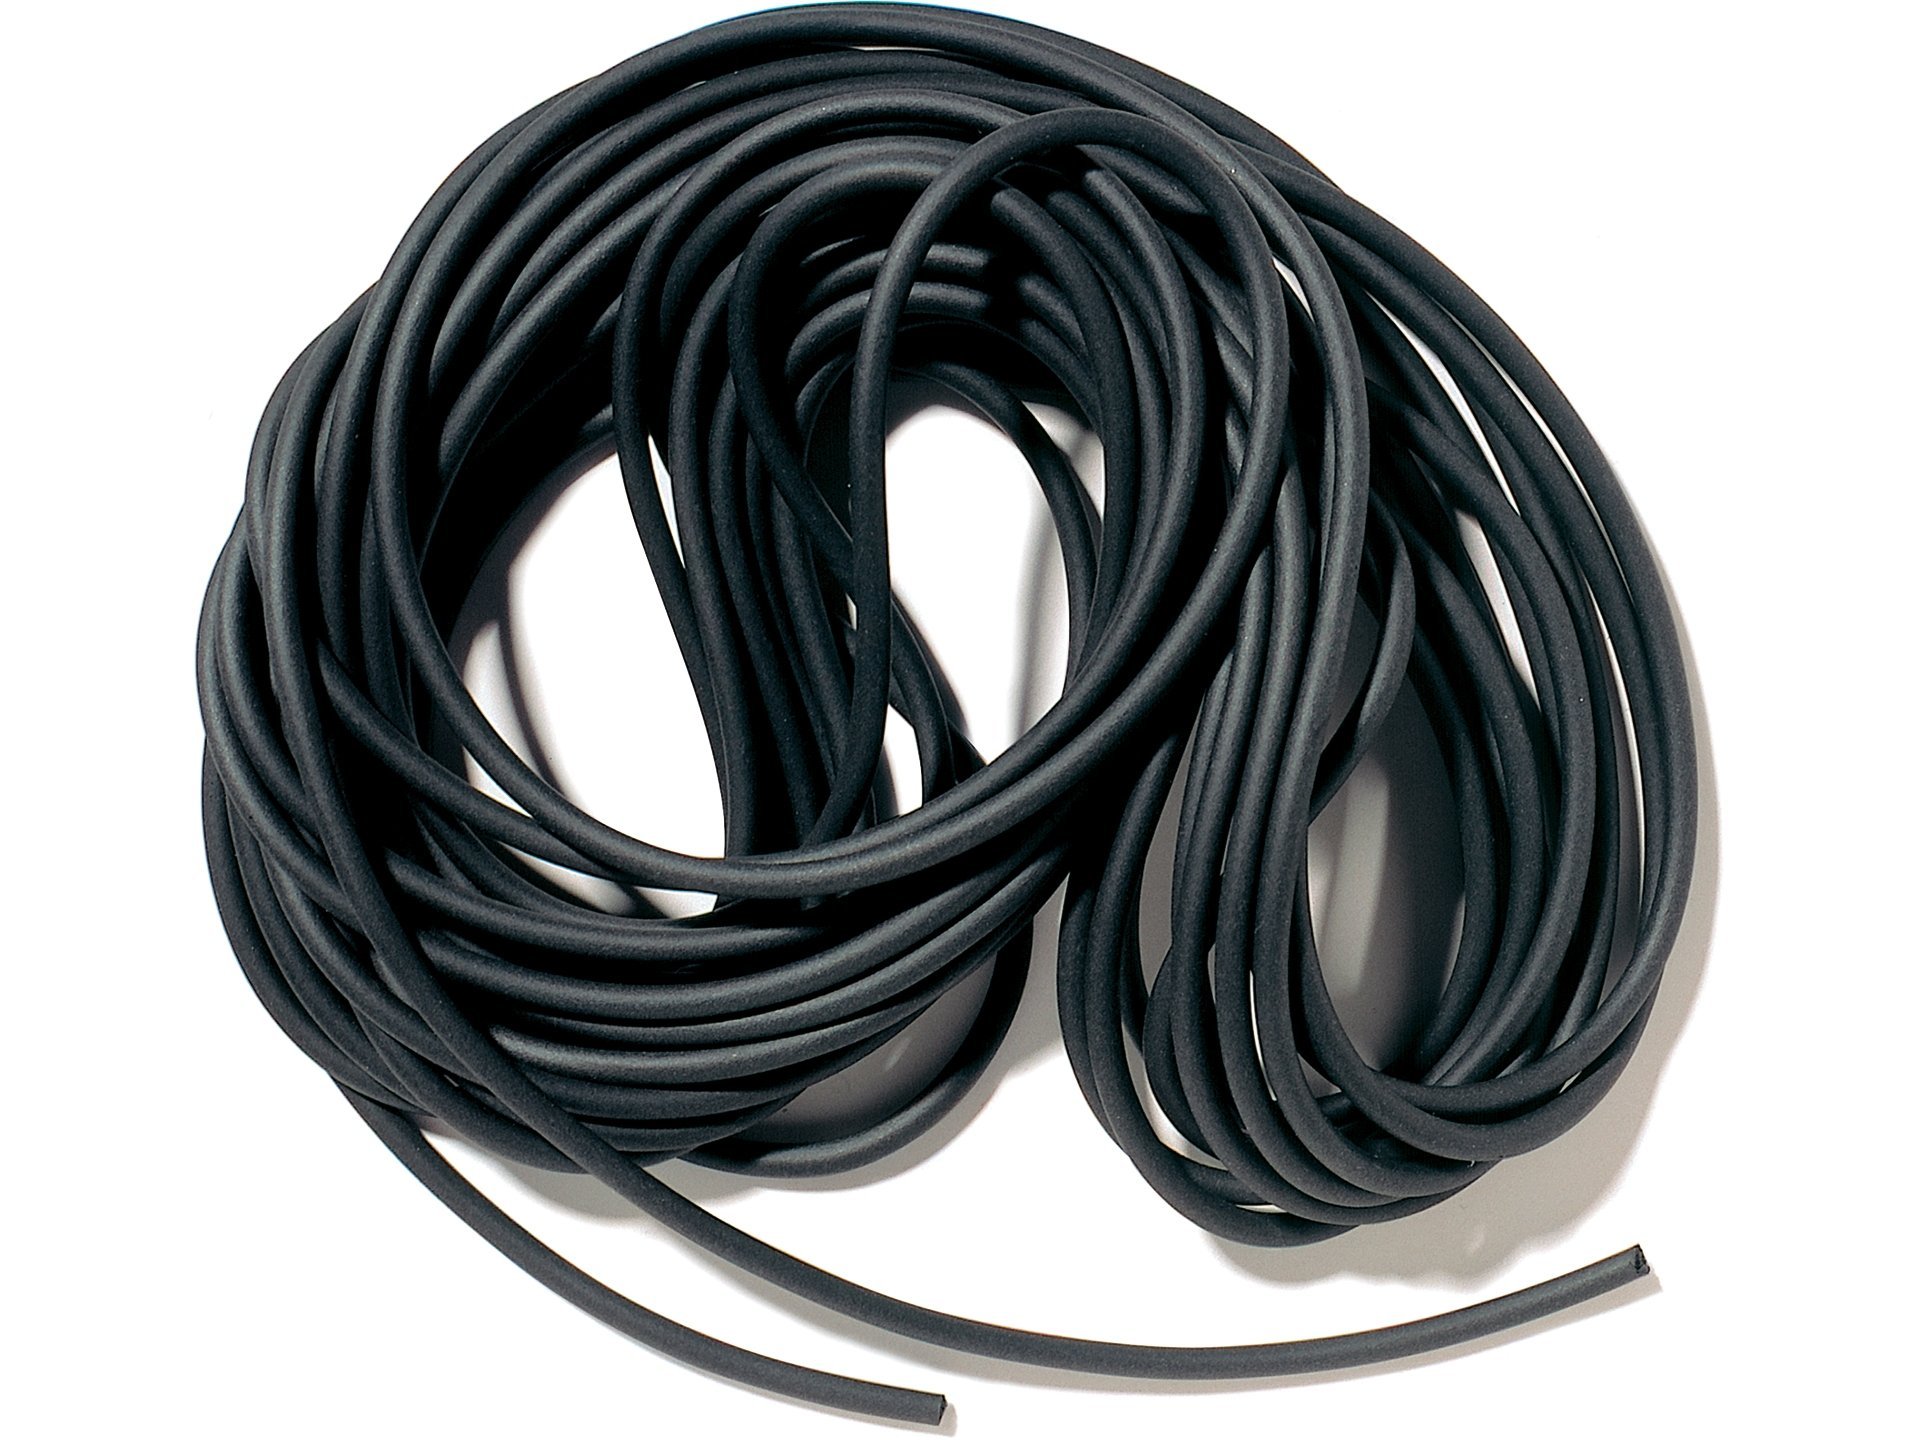 Comprar Cuerda redonda de goma EVA, negra online